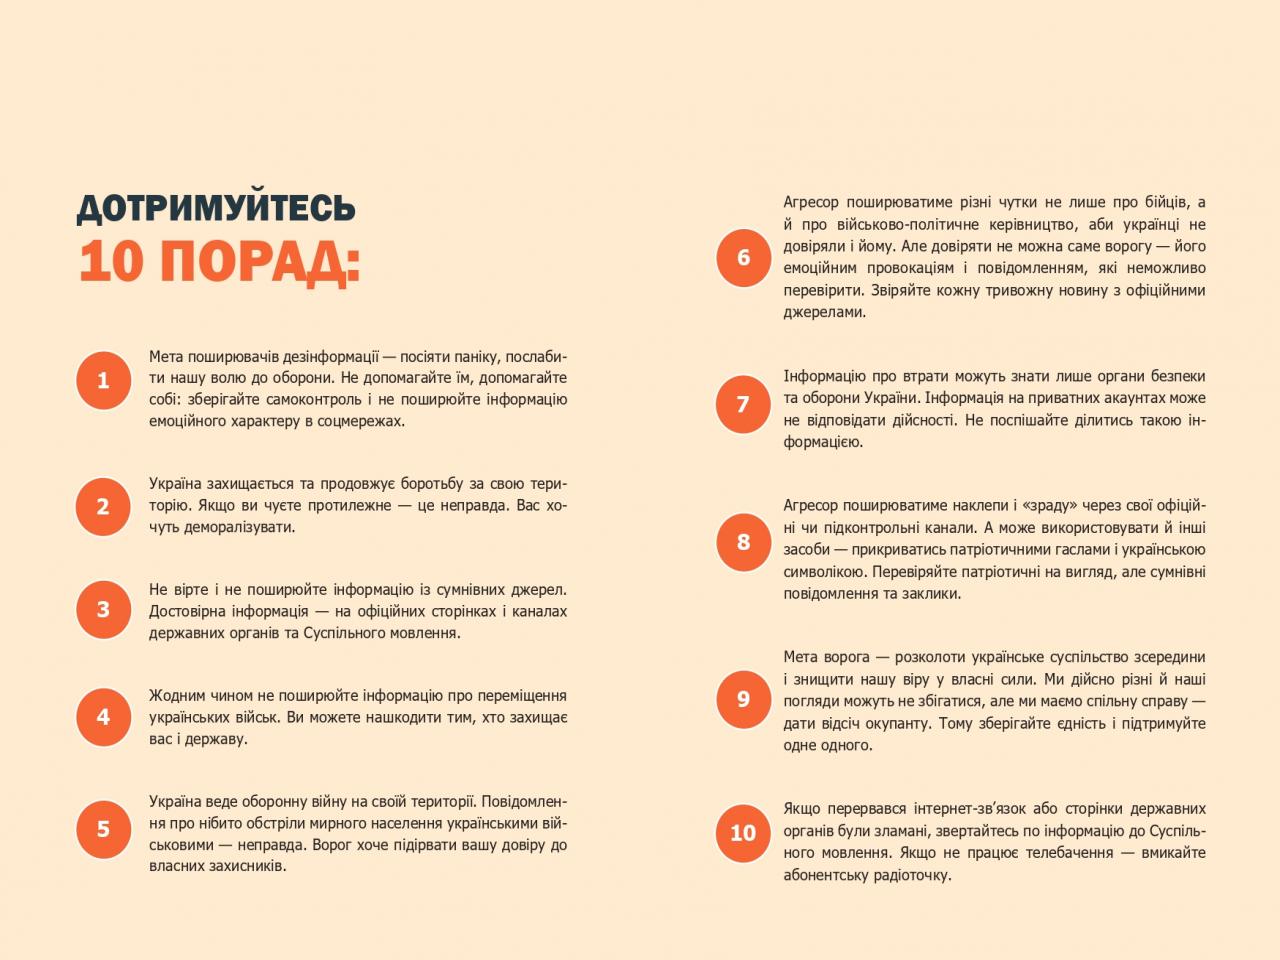 http://dunrada.gov.ua/uploadfile/archive_news/2022/02/21/2022-02-21_6385/images/images-11213.jpg